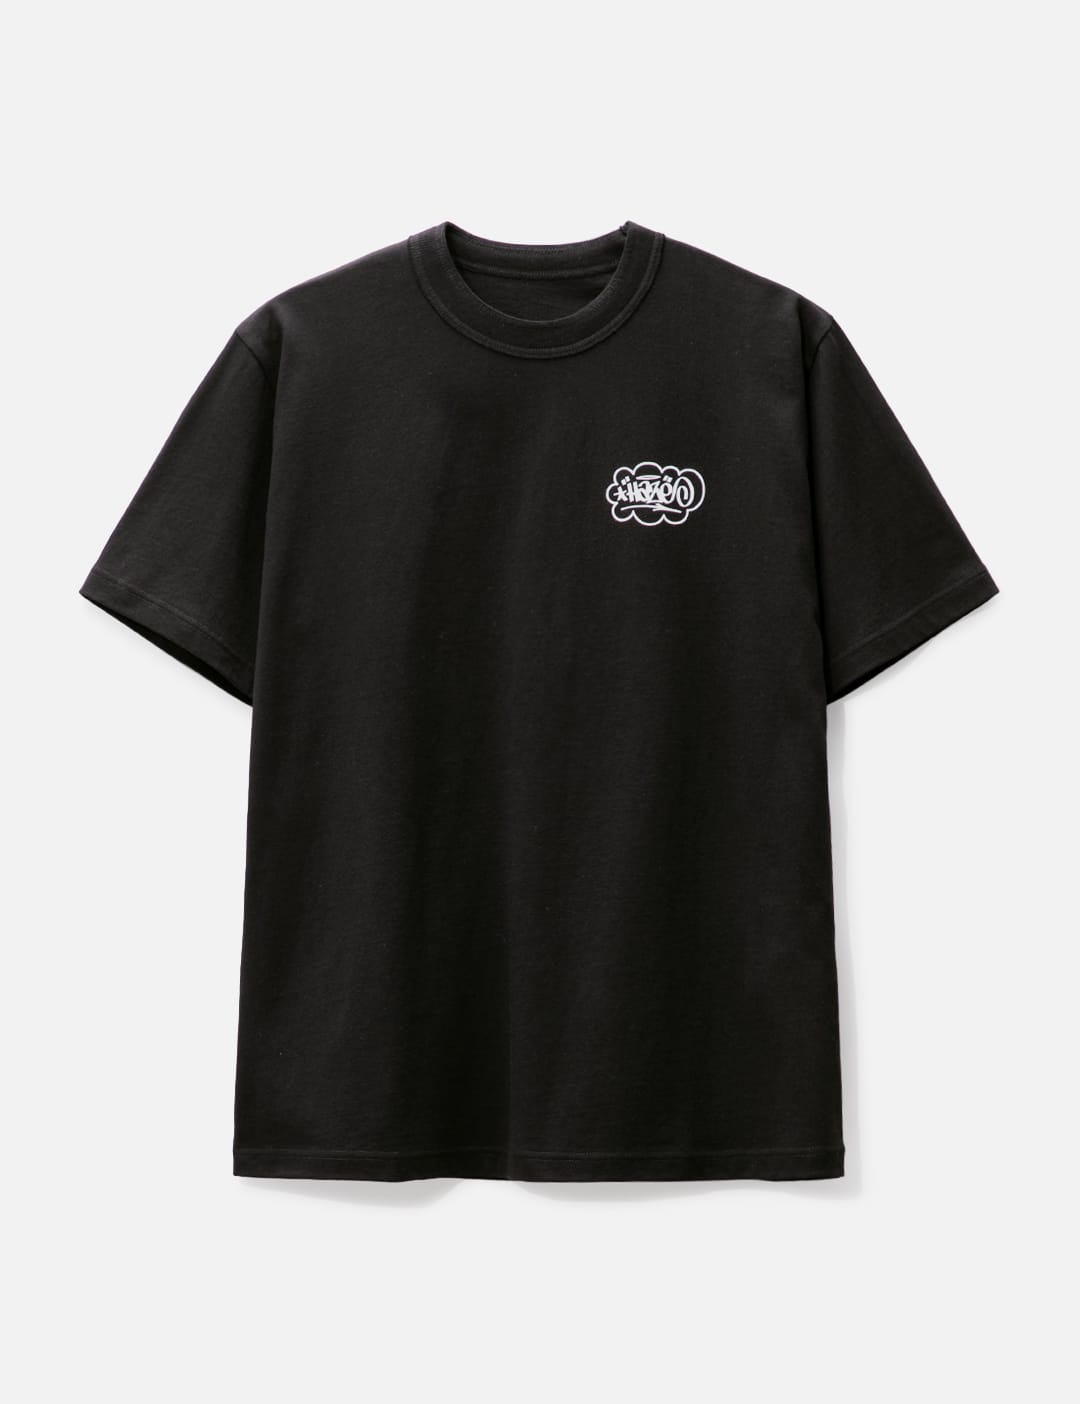 Sacai x KAWS コラボレーション 半袖 プリント シャツ